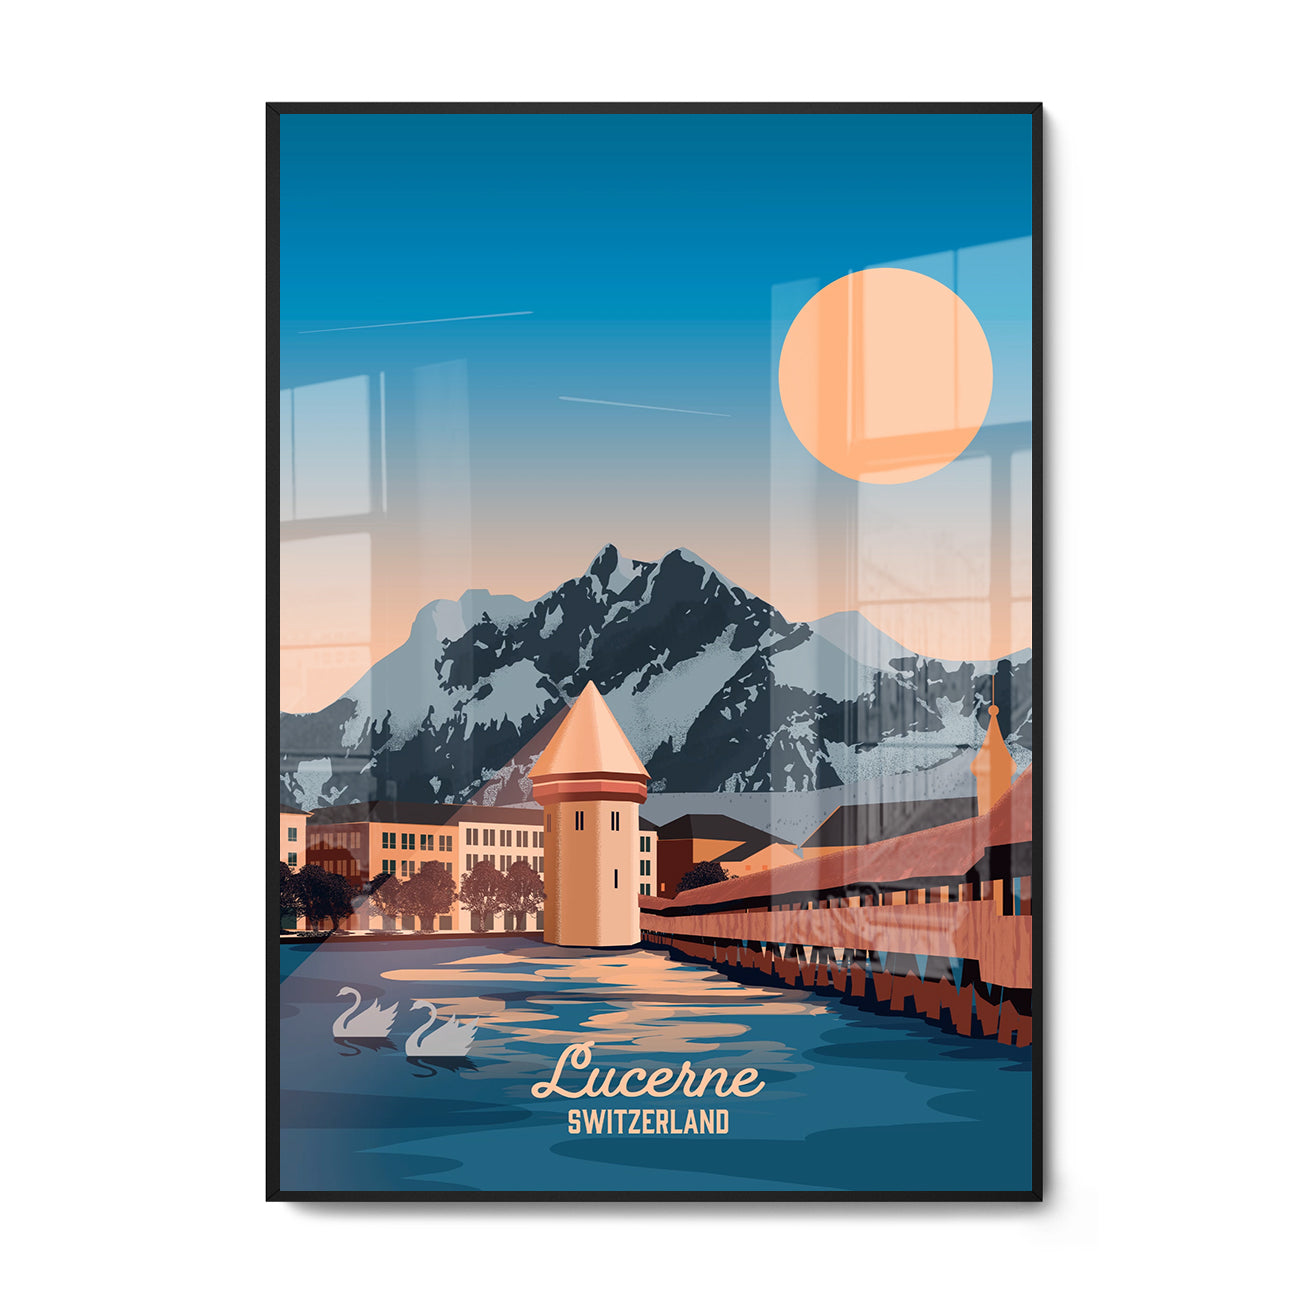 Framed poster of Lucerne